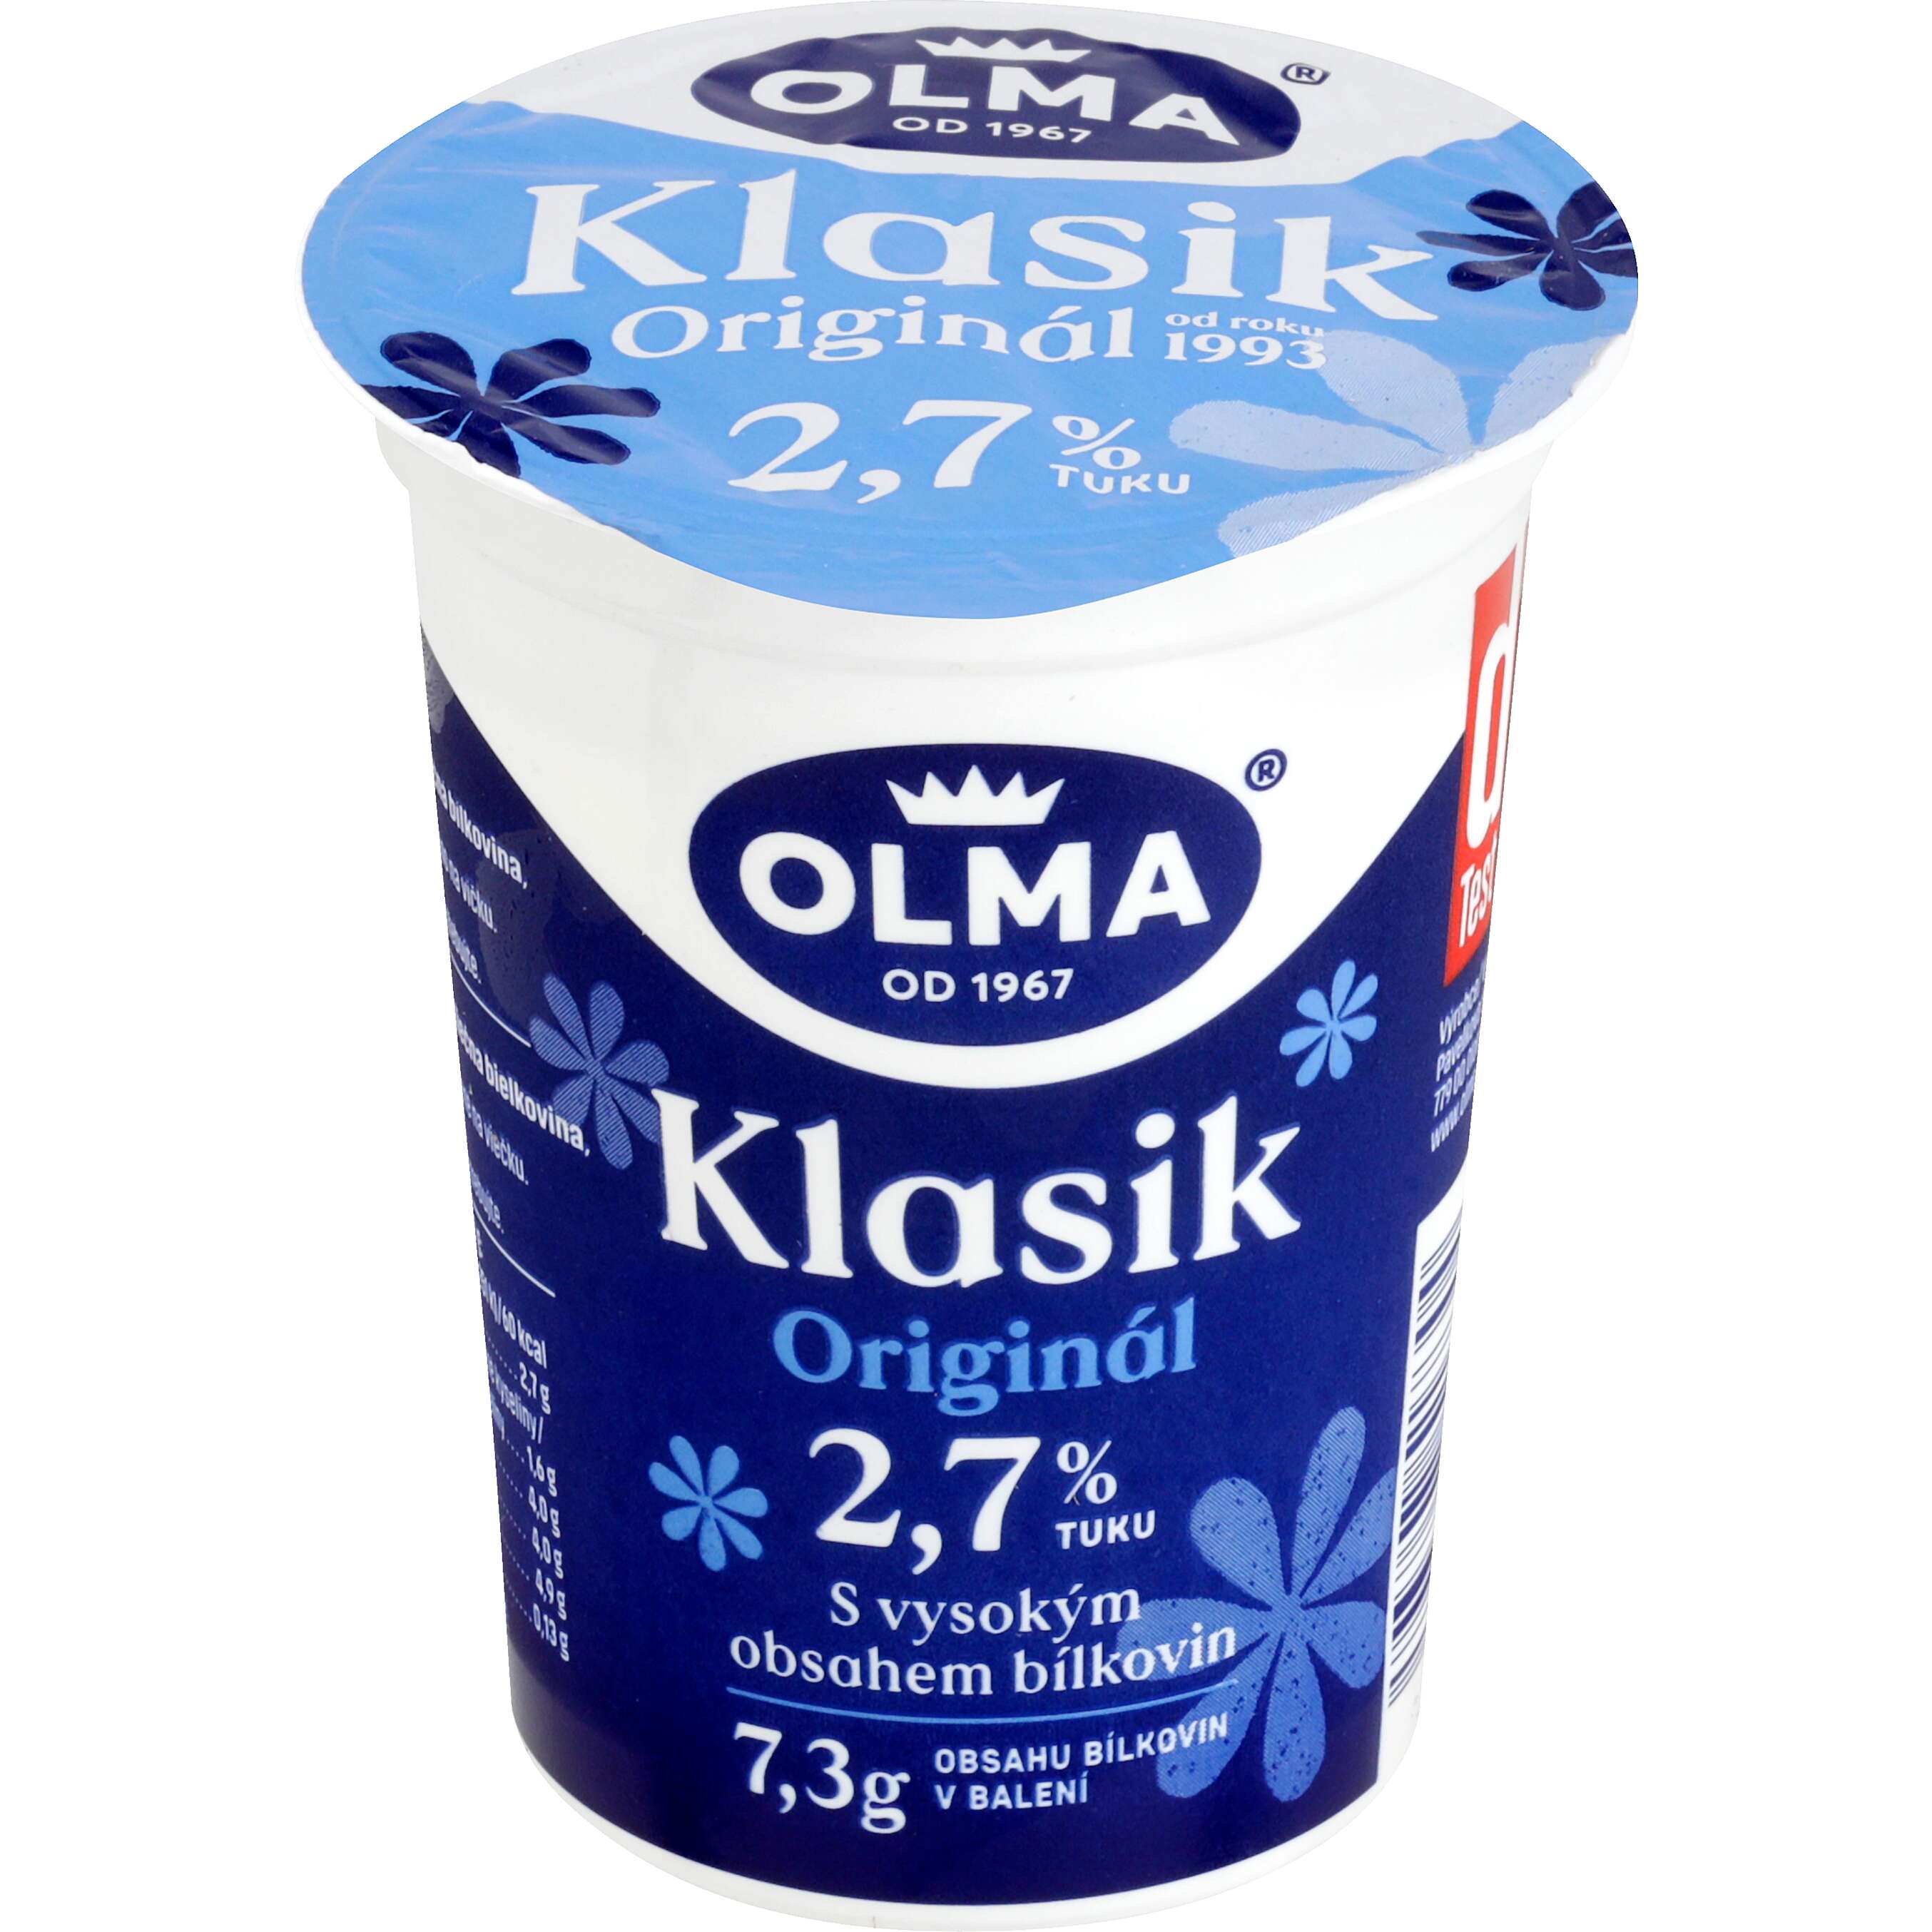 Zobrazit nabídku OLMA Klasik Bílý jogurt